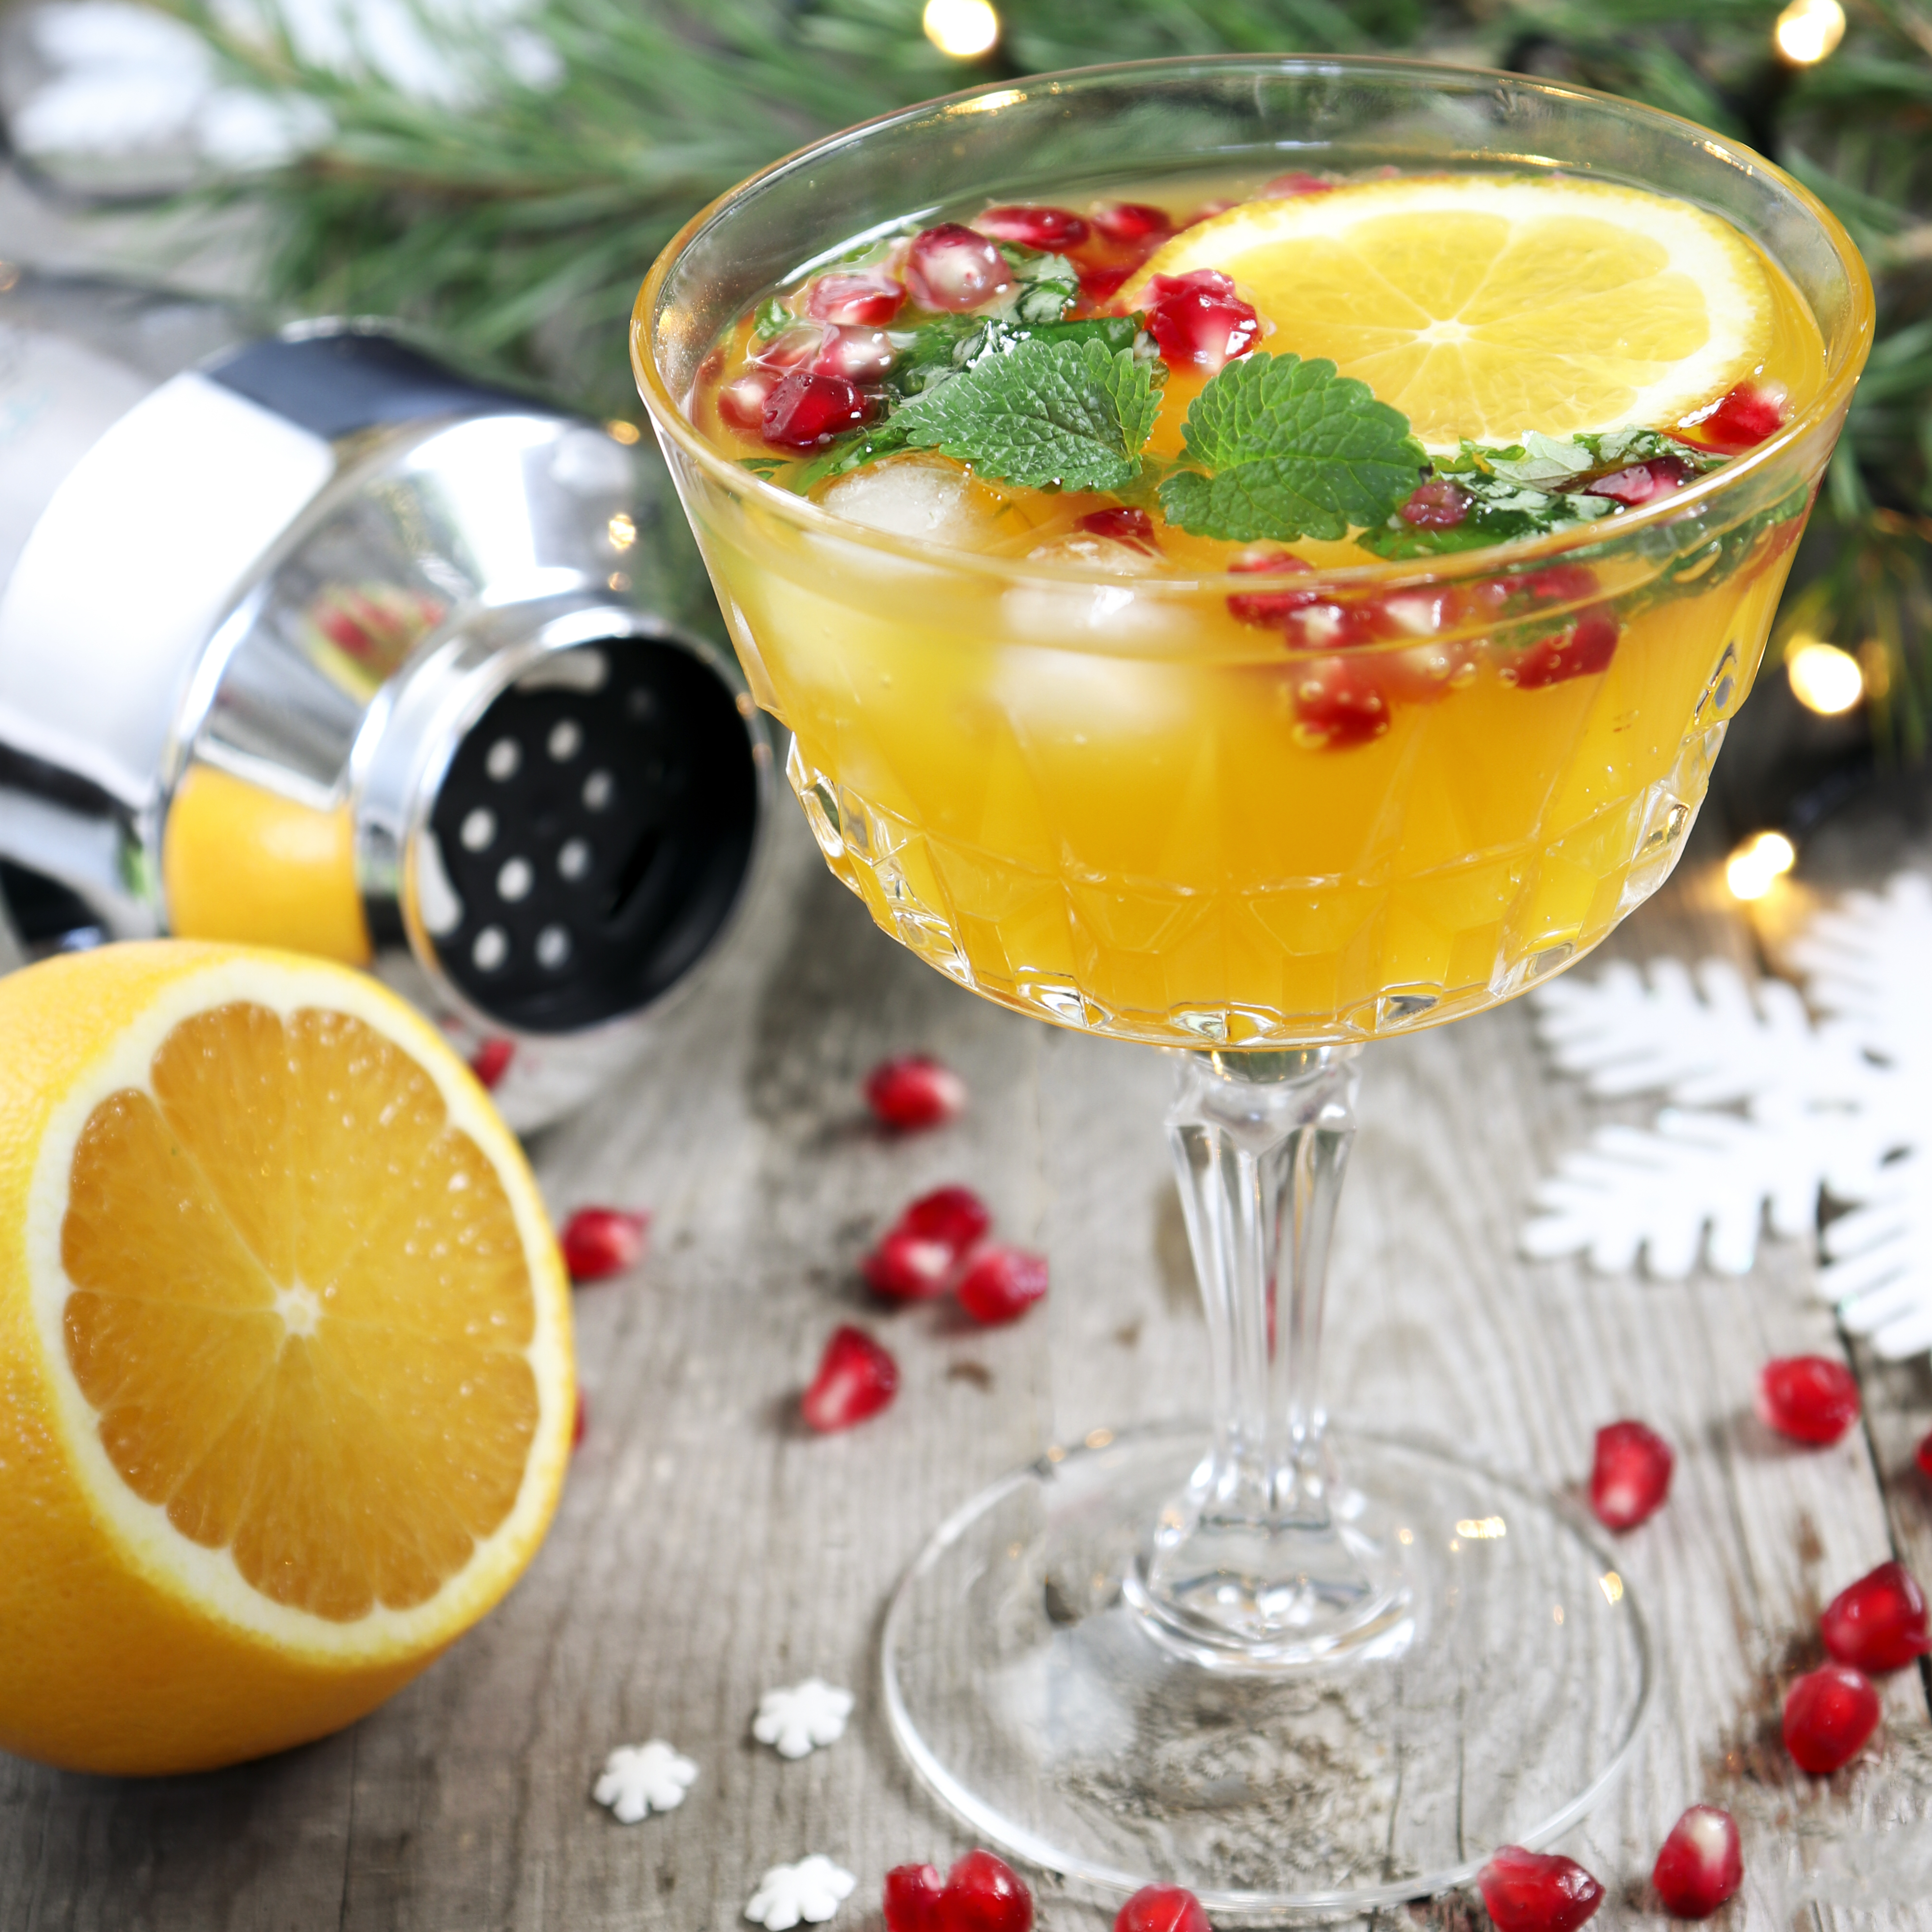 Spritsig julcocktail med apelsin och granatäpple